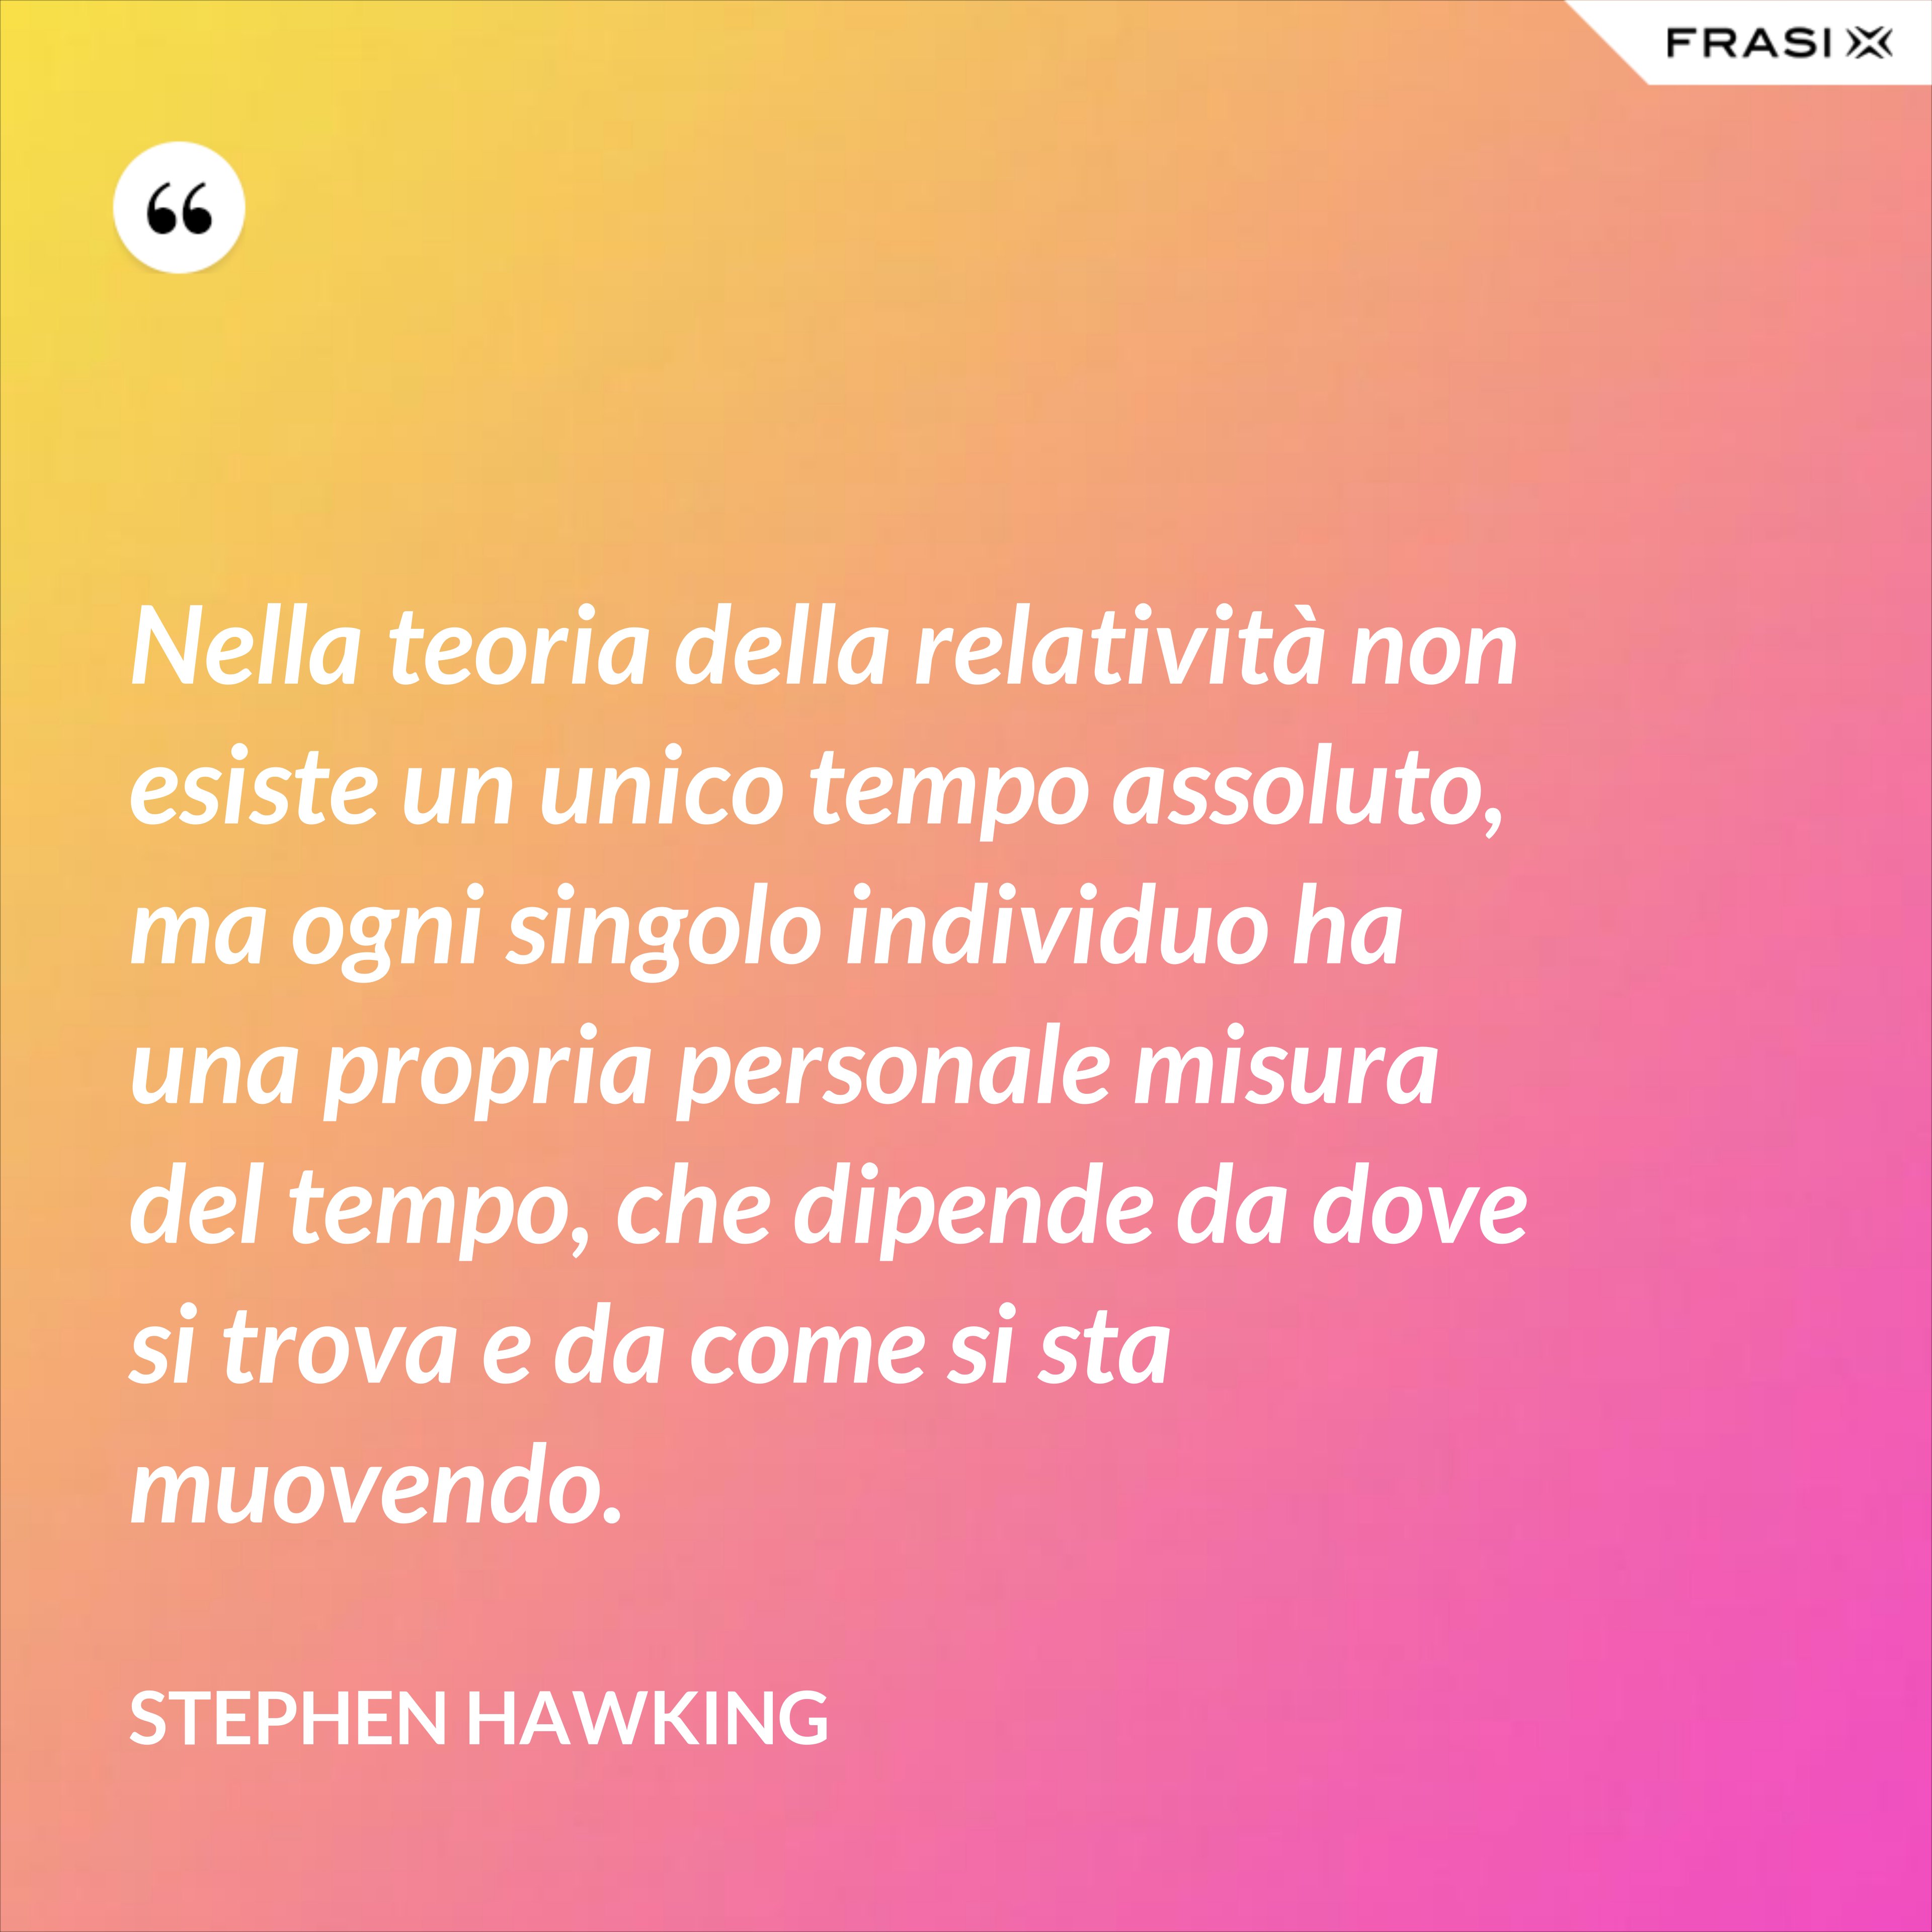 Nella teoria della relatività non esiste un unico tempo assoluto, ma ogni singolo individuo ha una propria personale misura del tempo, che dipende da dove si trova e da come si sta muovendo. - Stephen Hawking